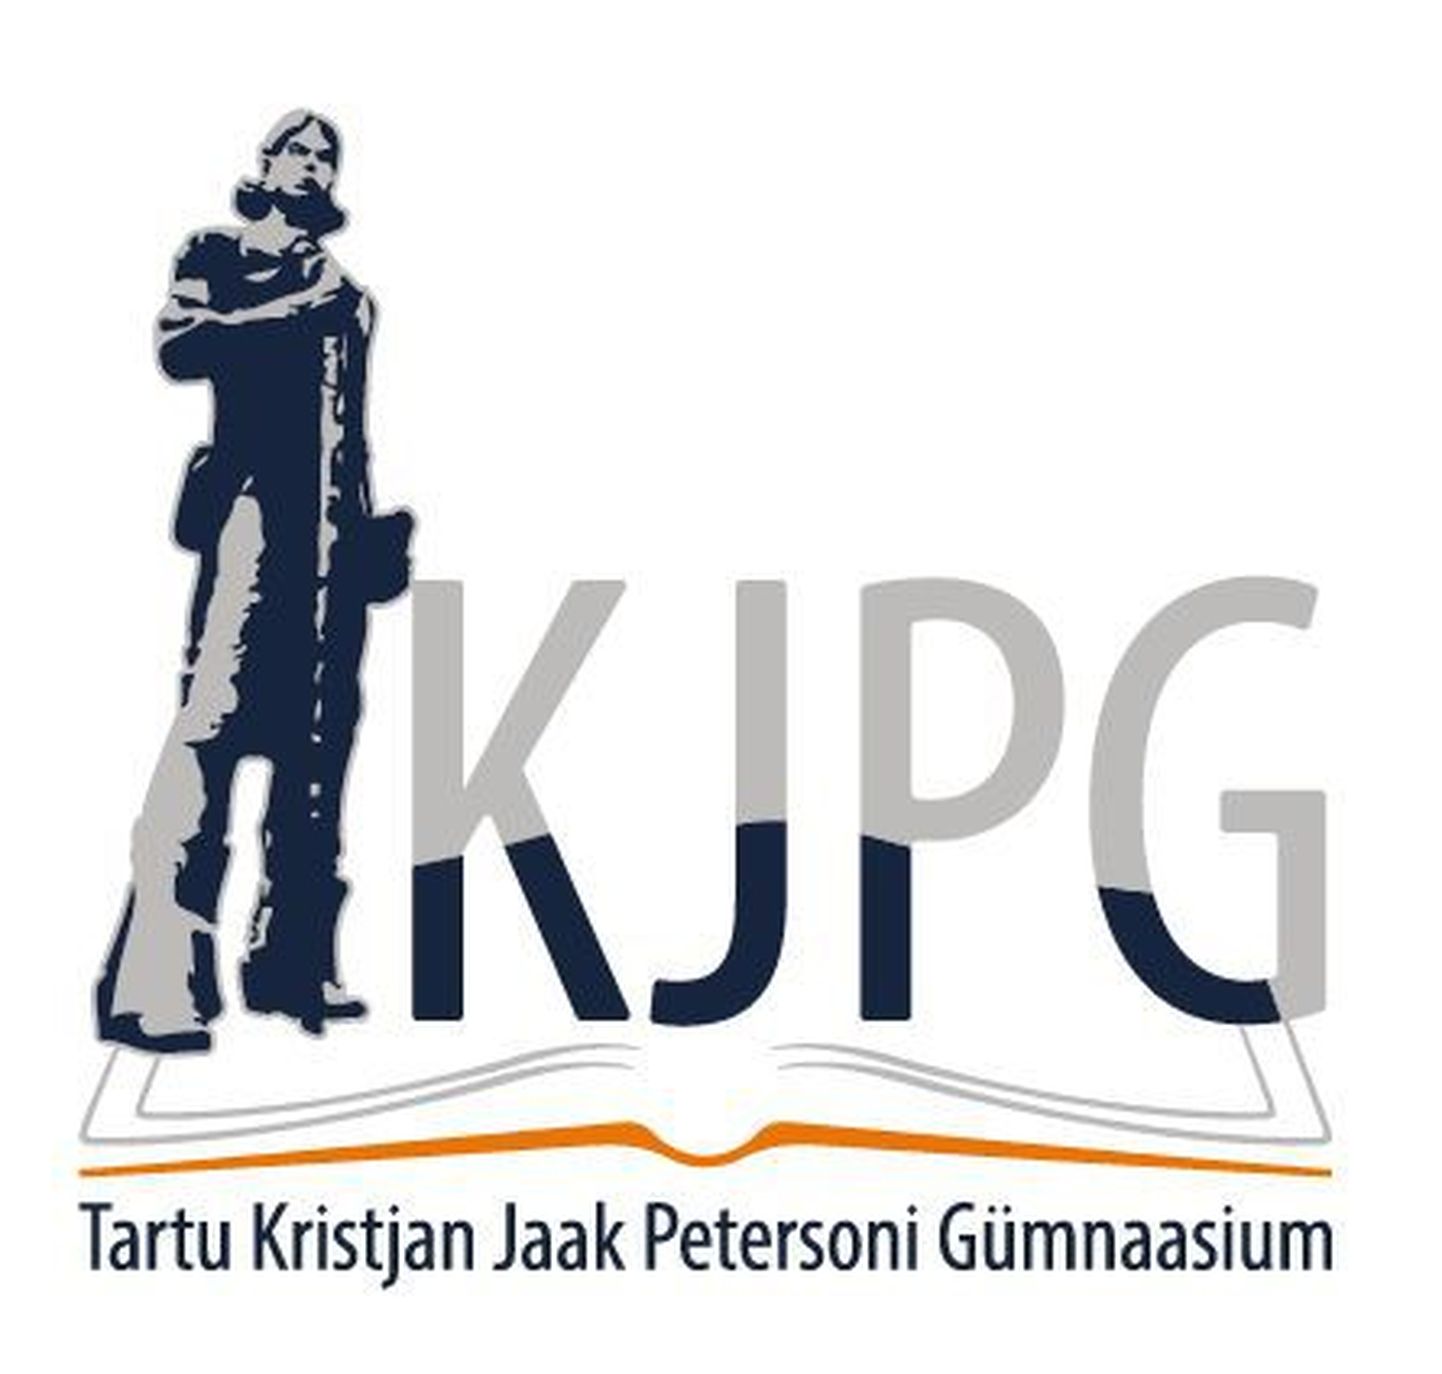 Kristjan Jaak Petersoni gümnaasiumi logo.